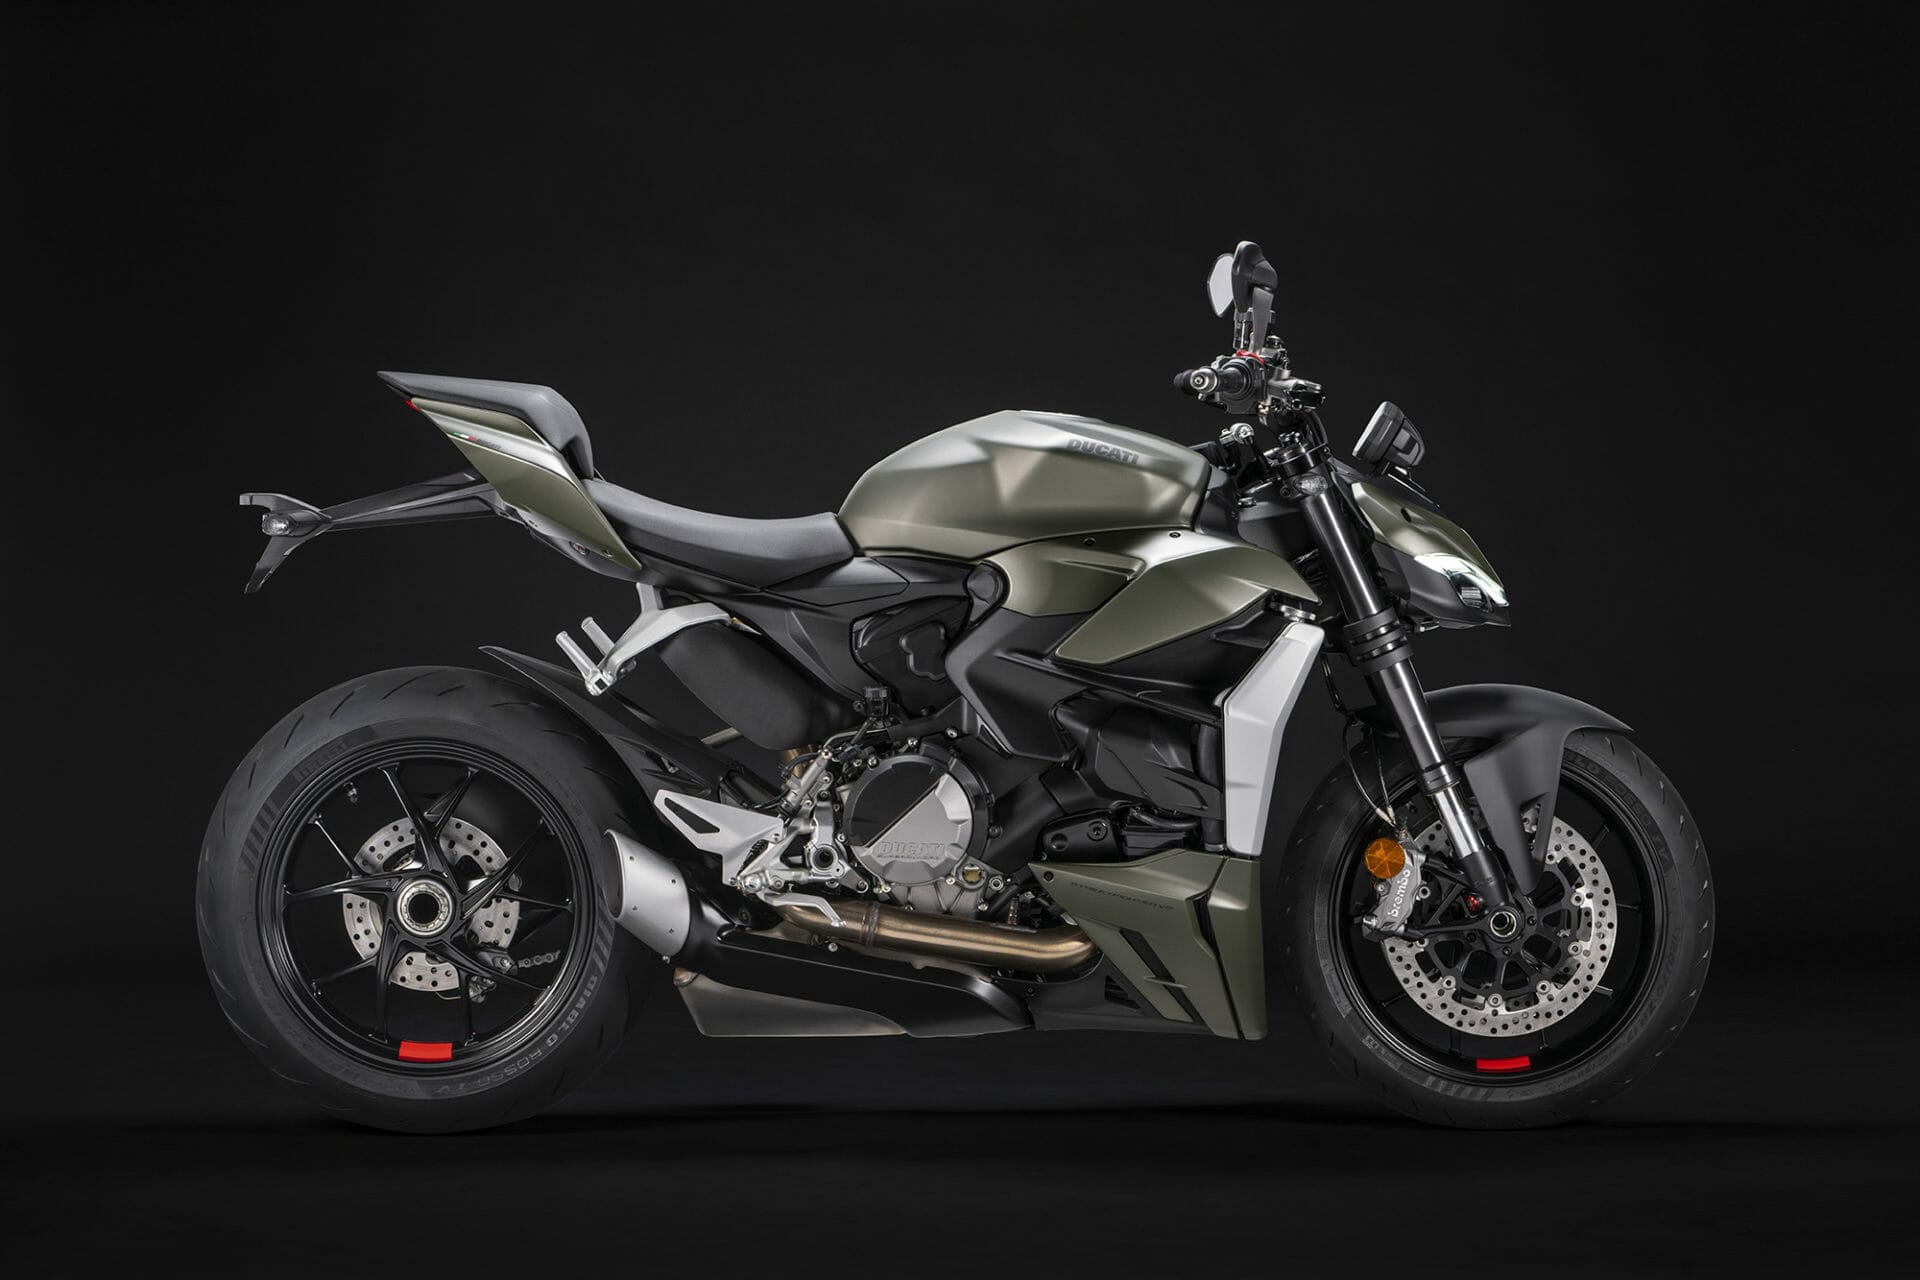 Ducati Streetfighter V2 bekommt eine zusätzliche Farbvariante - MOTORCYCLES.NEWS